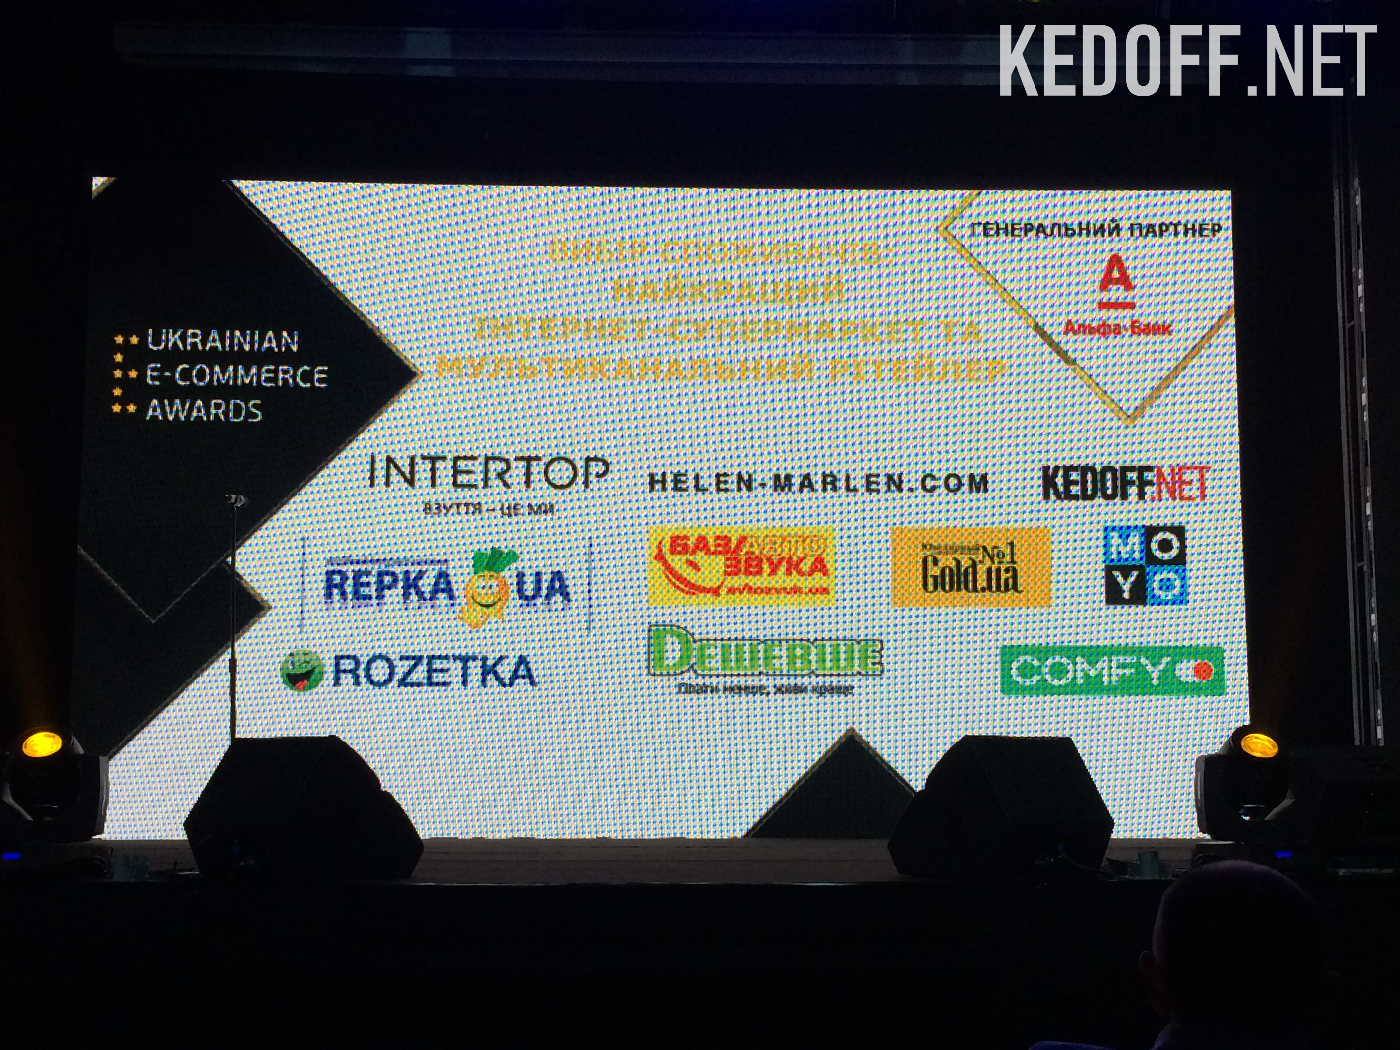 kedoff.net Ukrainian E-commerce Awards 2016